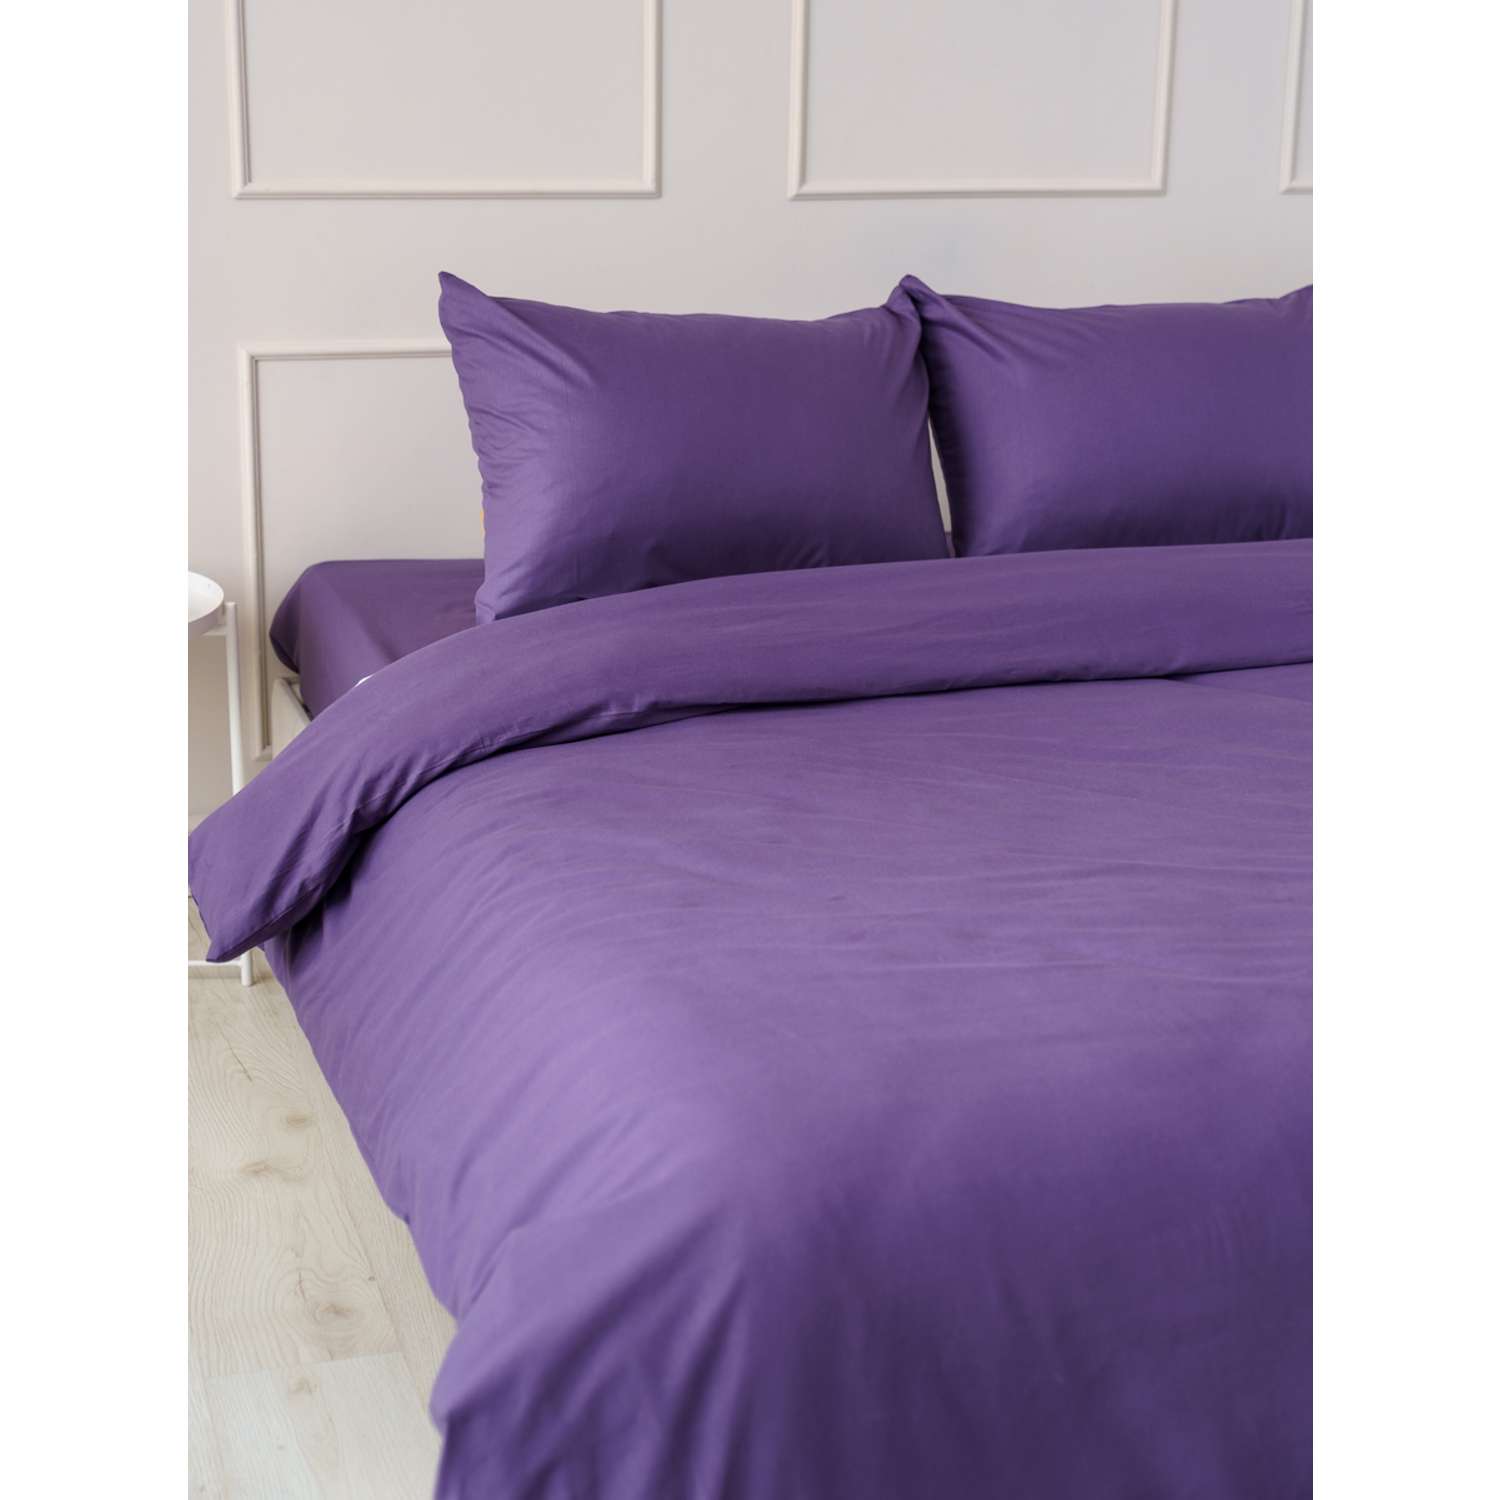 Комплект постельного белья IDEASON поплин 3 предмета Евро фиолетовый - фото 2